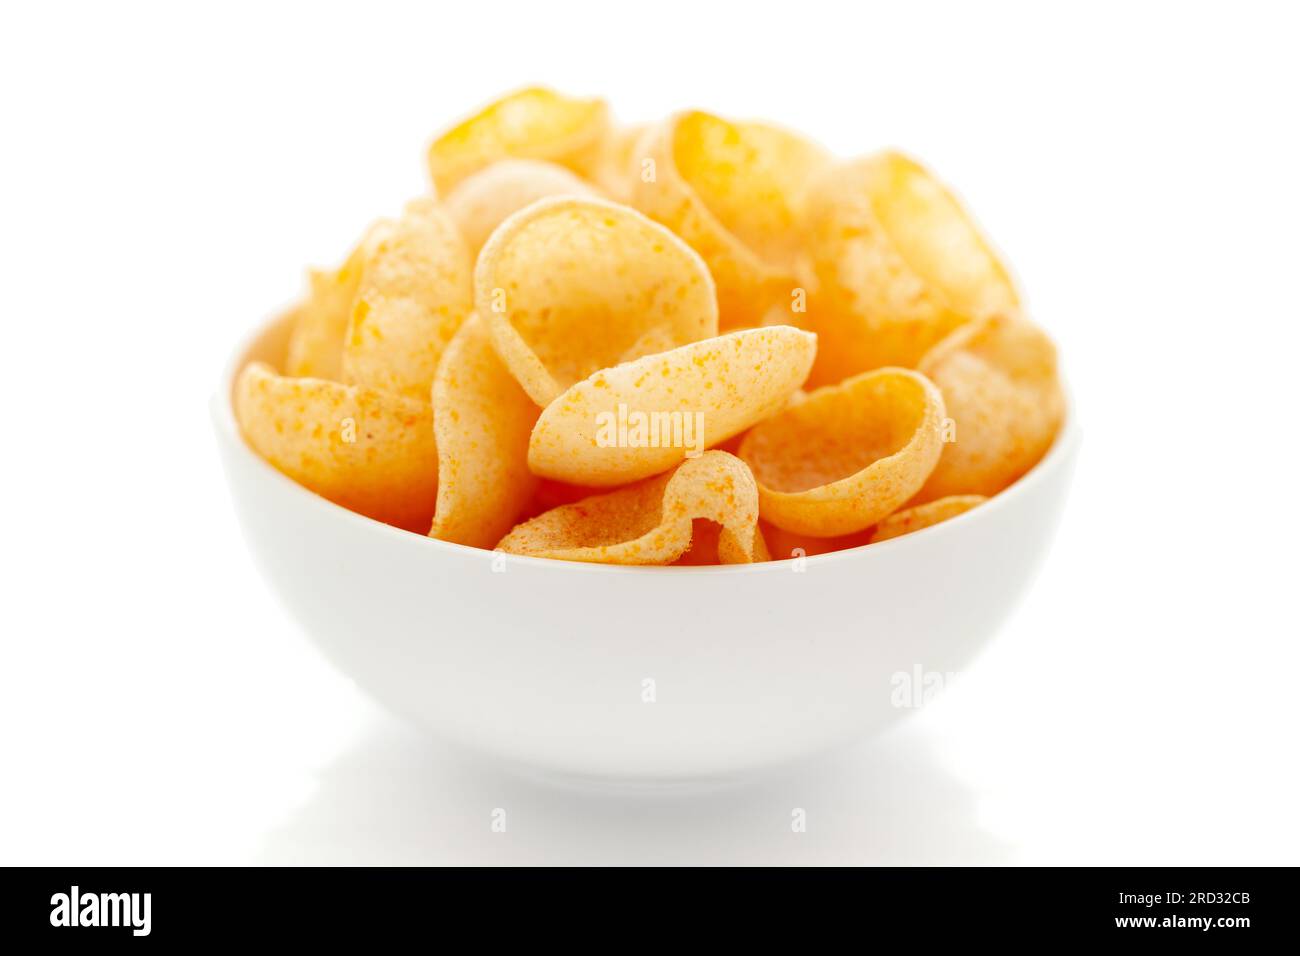 Nahaufnahme von Cheese Puff Snacks cremefarben, beliebt knusprige und gepuffte Snacks käsig salzig blassgelbe Farbe auf weißem Hintergrund Stockfoto